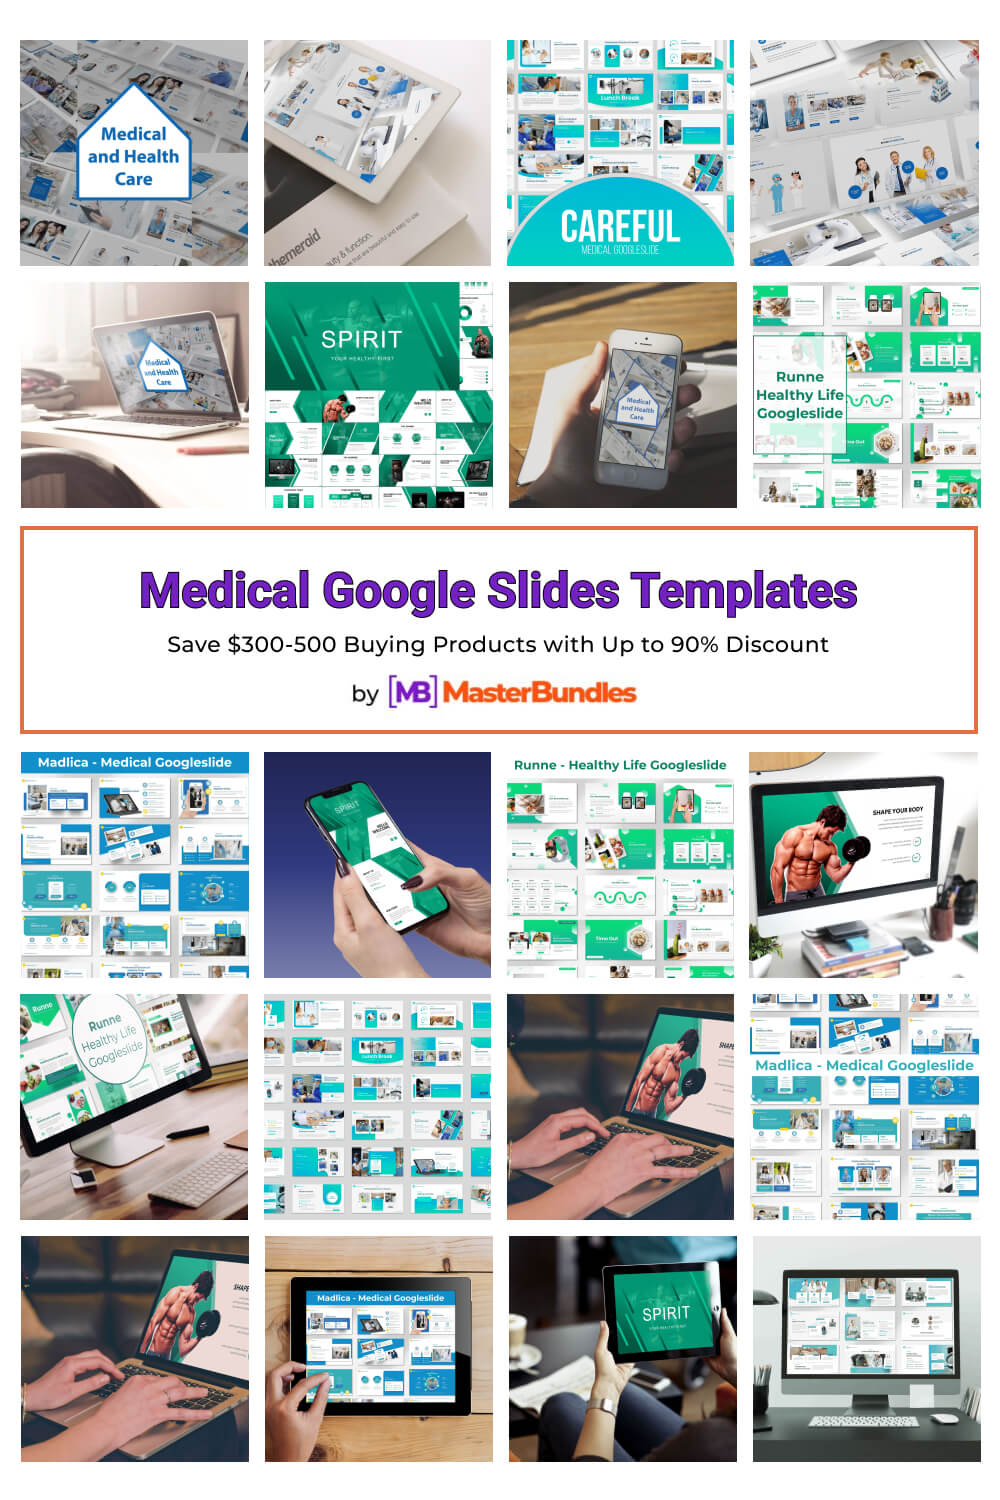 medical google slides templates pinterest image.